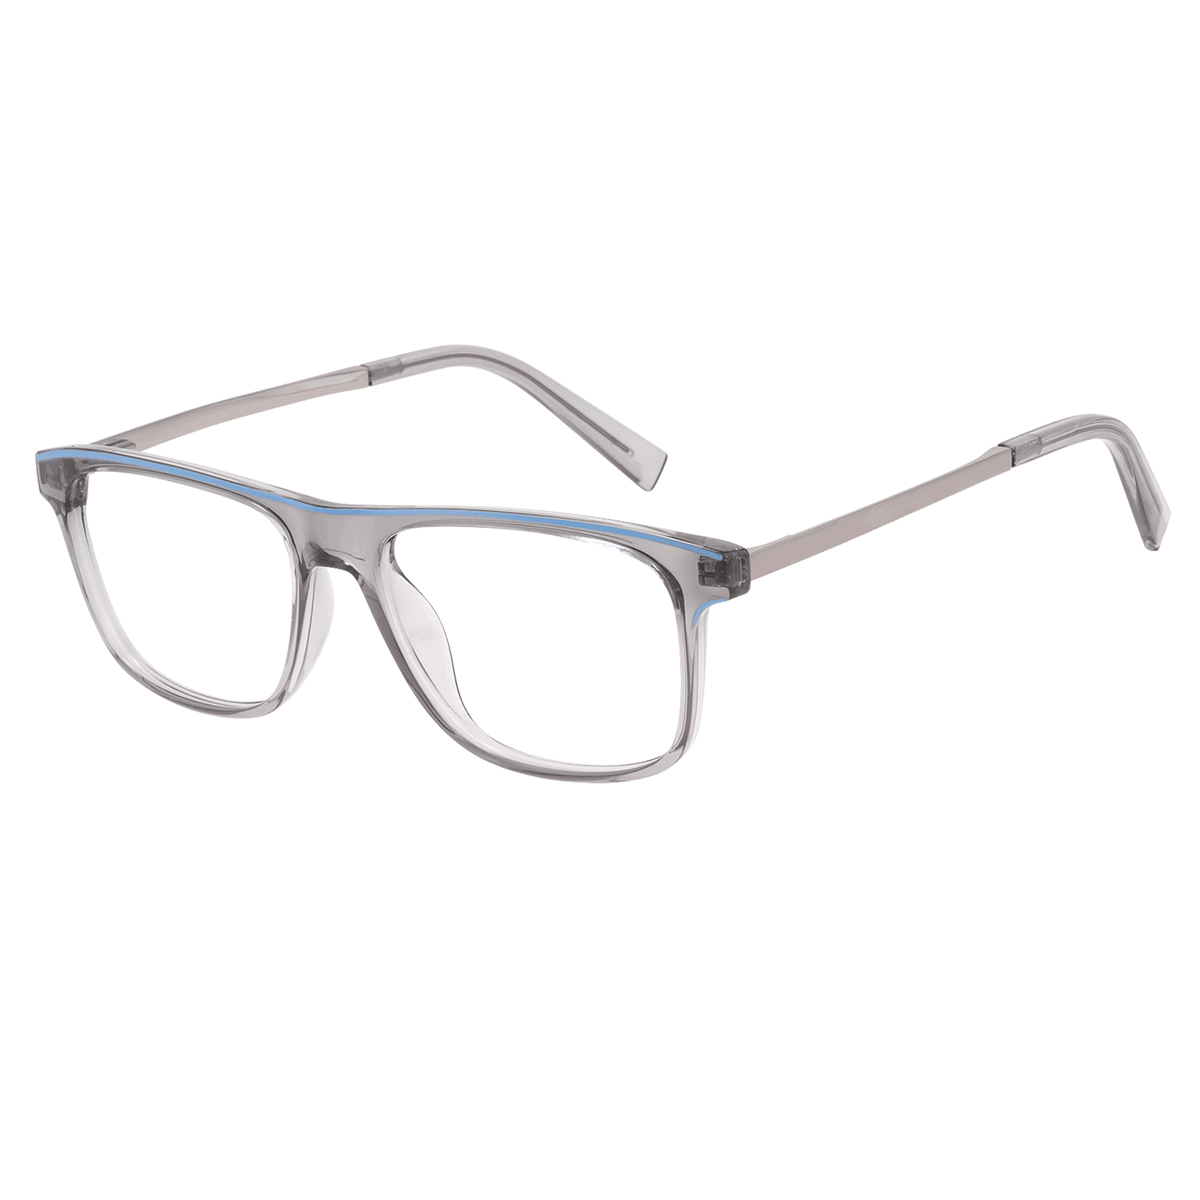 Avery - Rectangle Transparent-Gray Reading Glasses for Men & Women